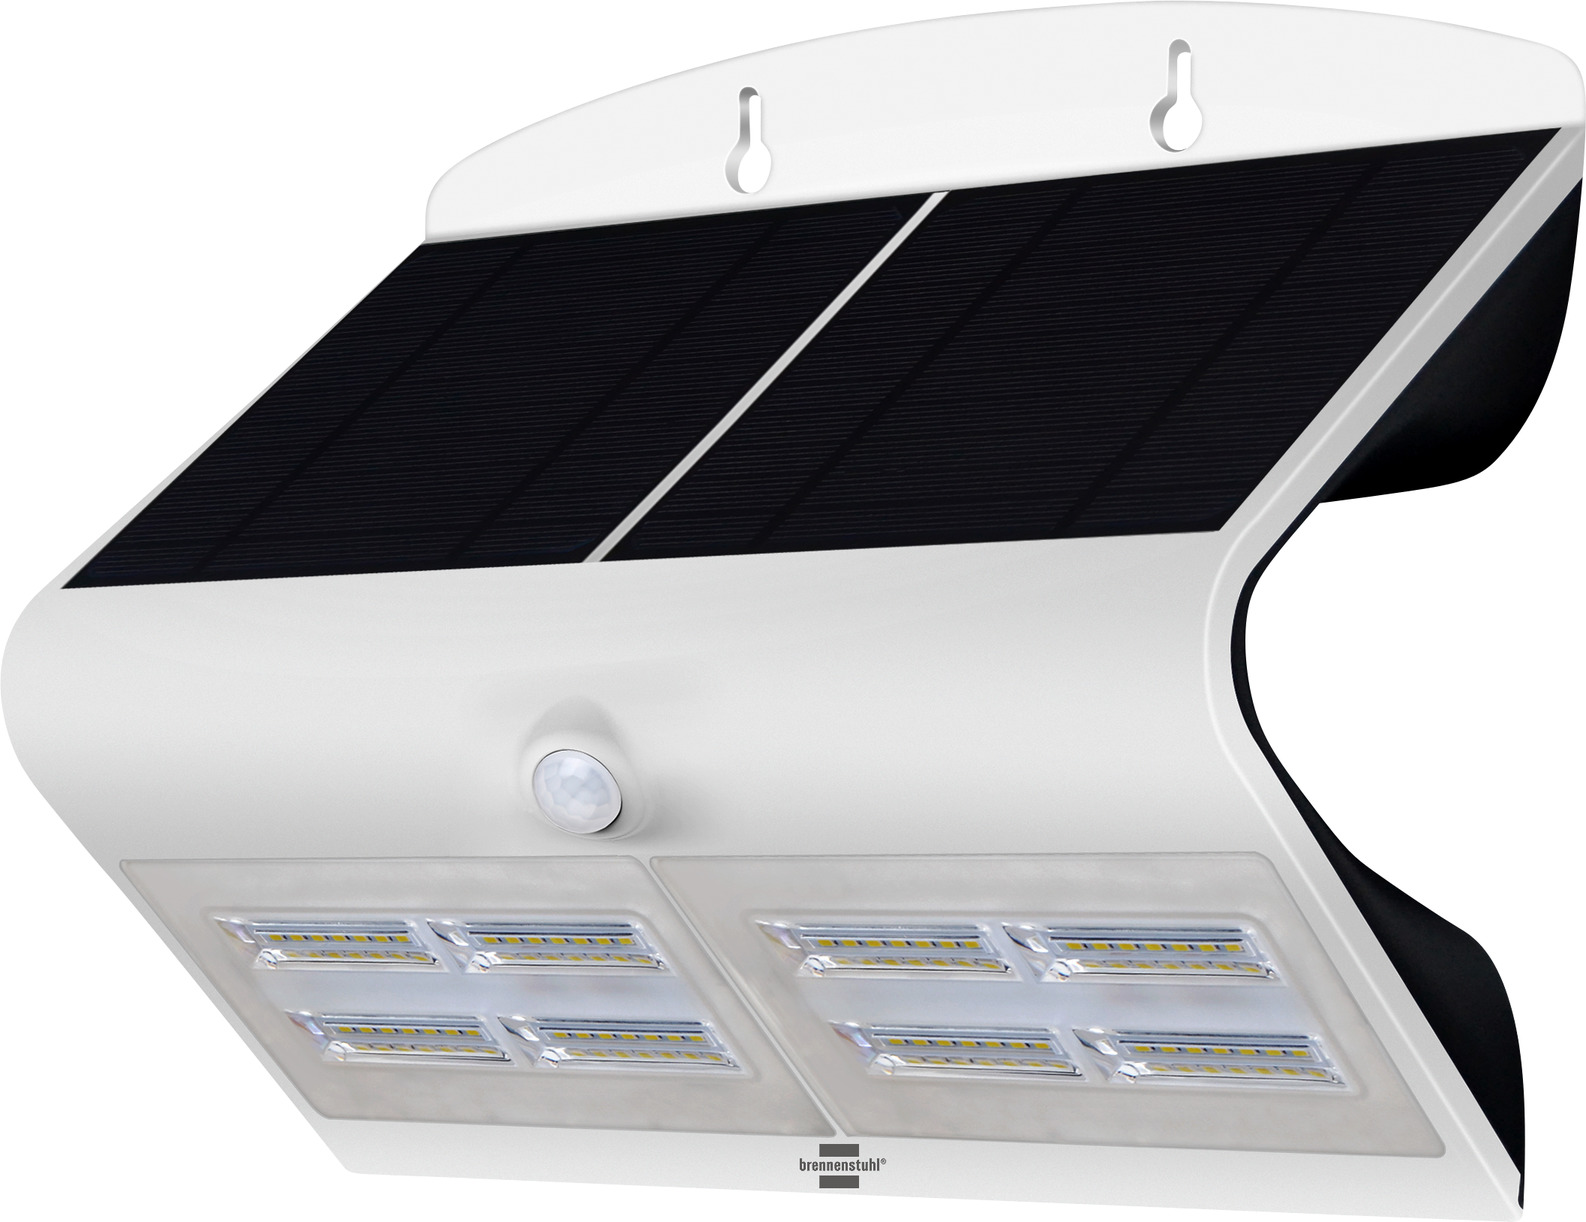 LED Solarwandleuchte | Dämmerungssensor mit IP65, mit Bewegungsmelder, 800lm, Sensor SOL weiss/schwarz 800, 6,8W, WAVE und brennenstuhl®